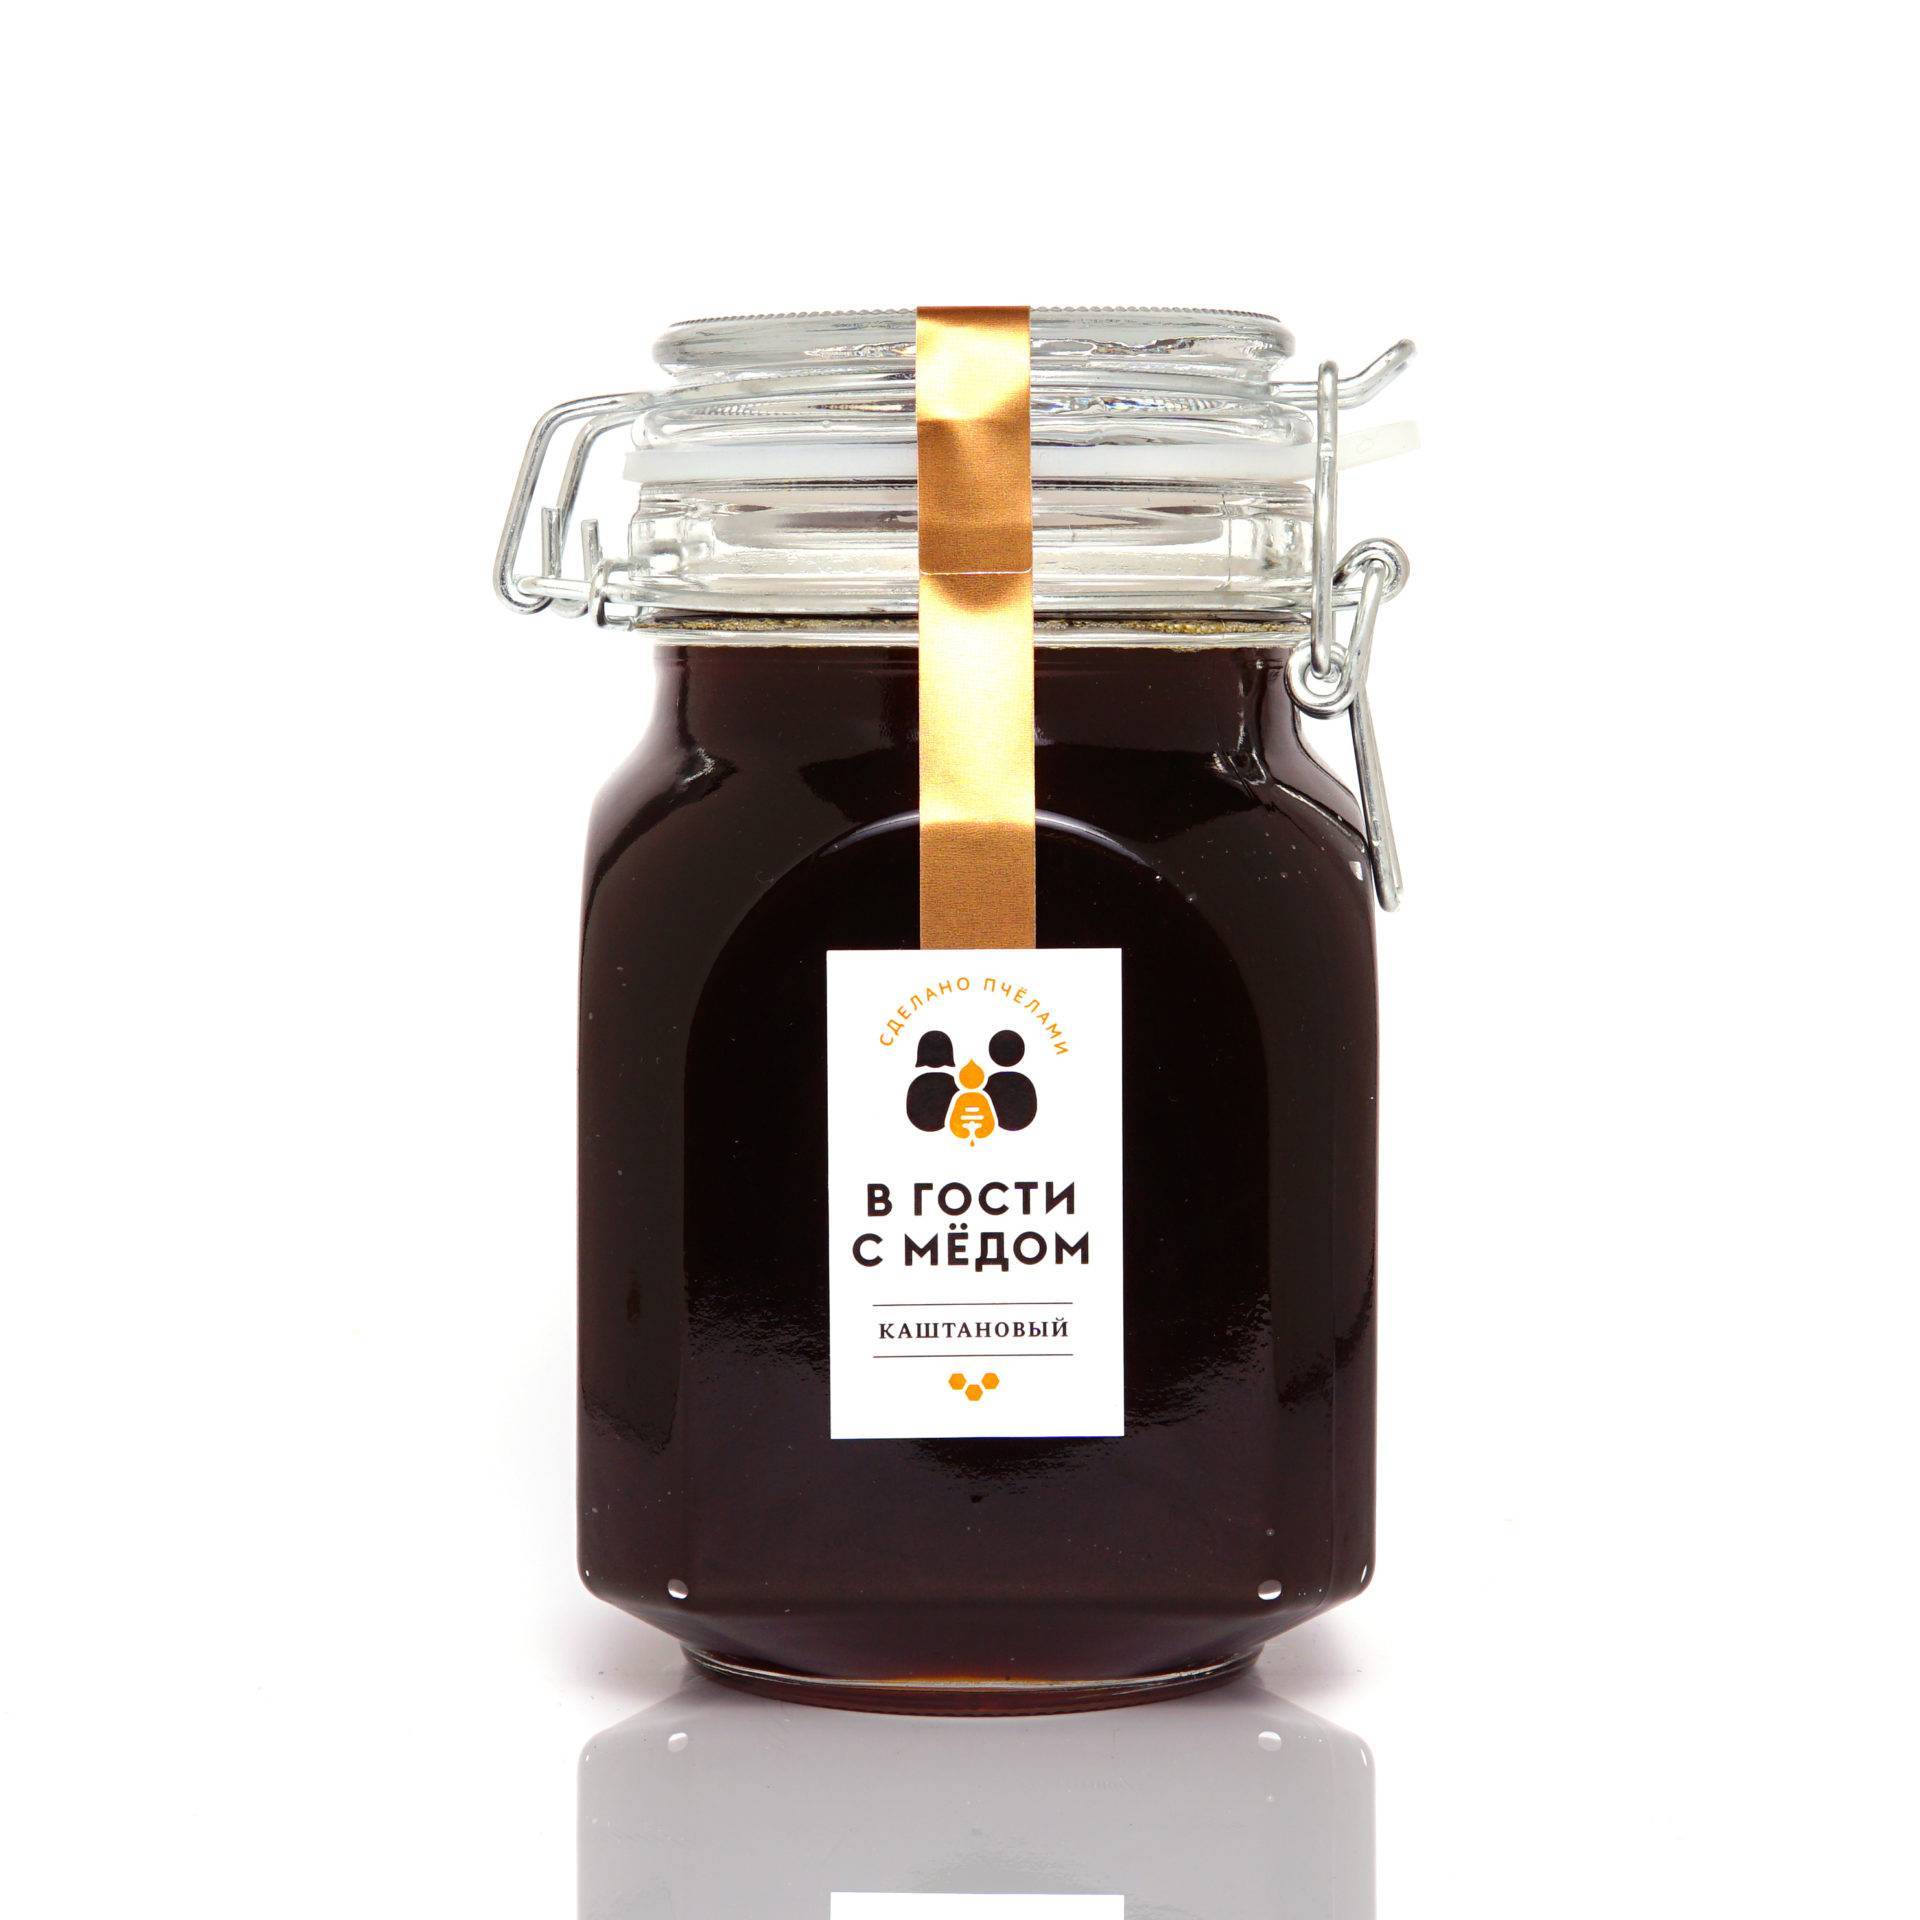 Каштановый мёд: польза, вред и противопоказания, особенности применения